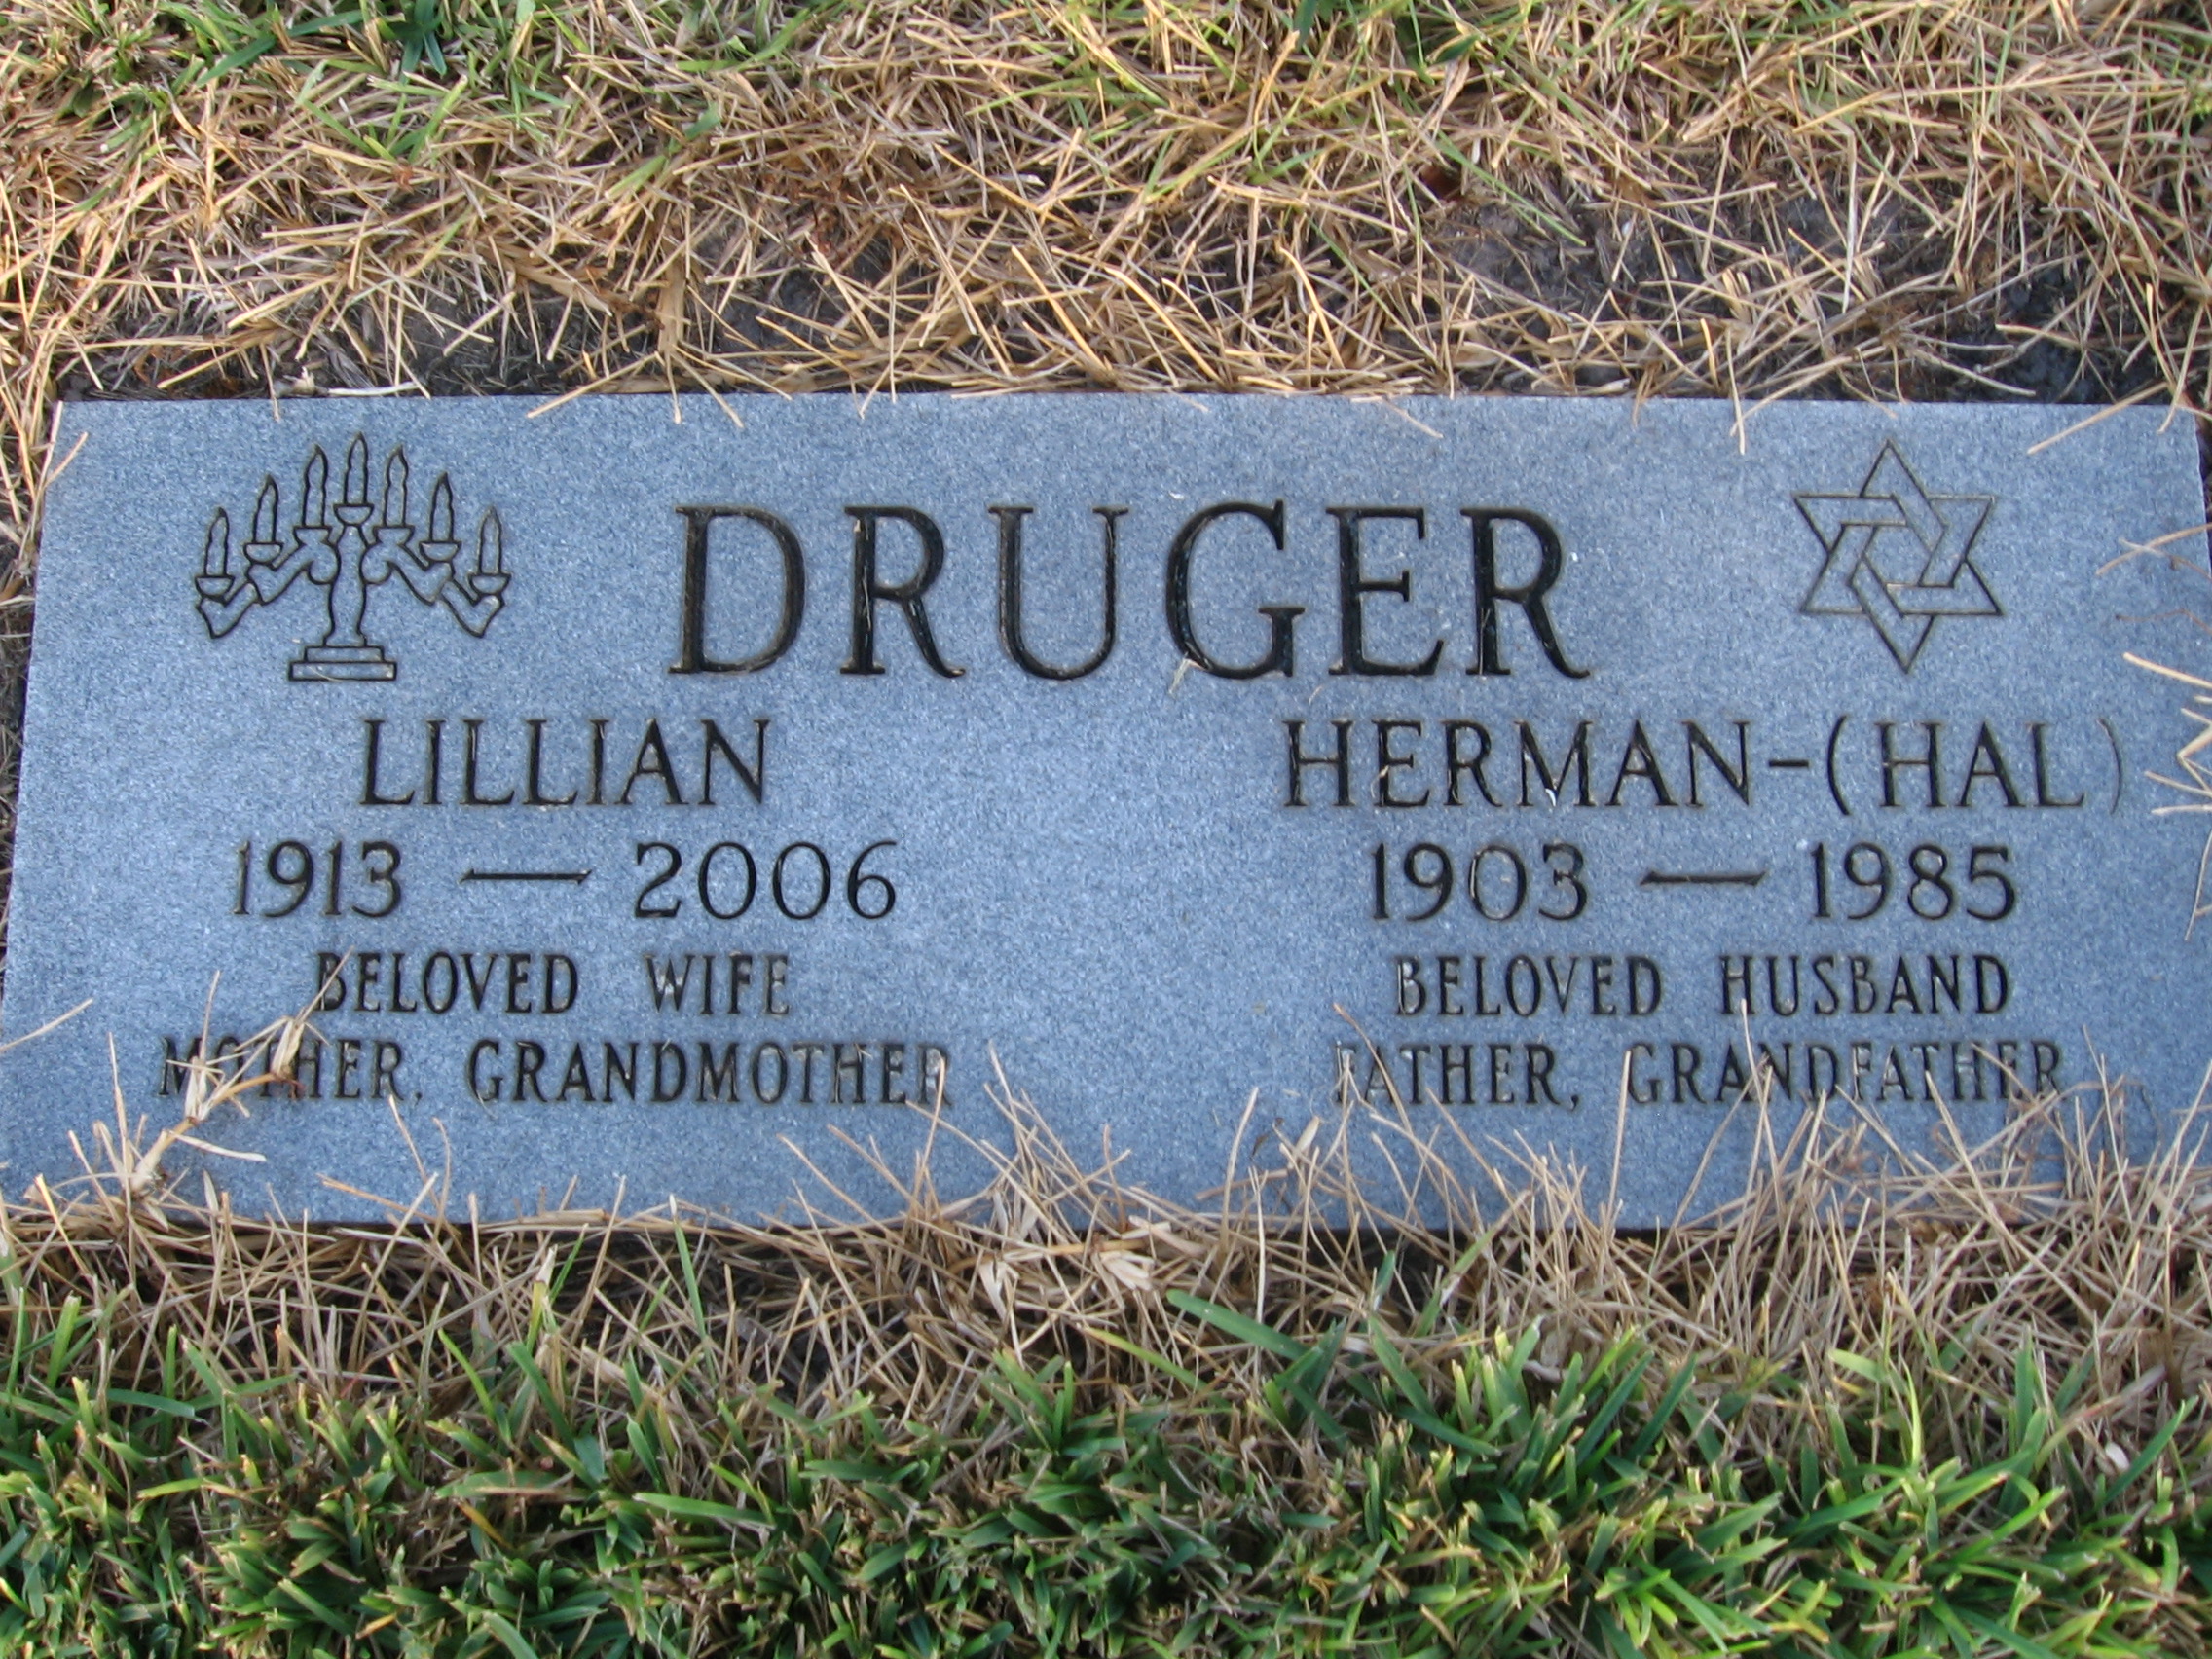 Herman "Hal" Druger